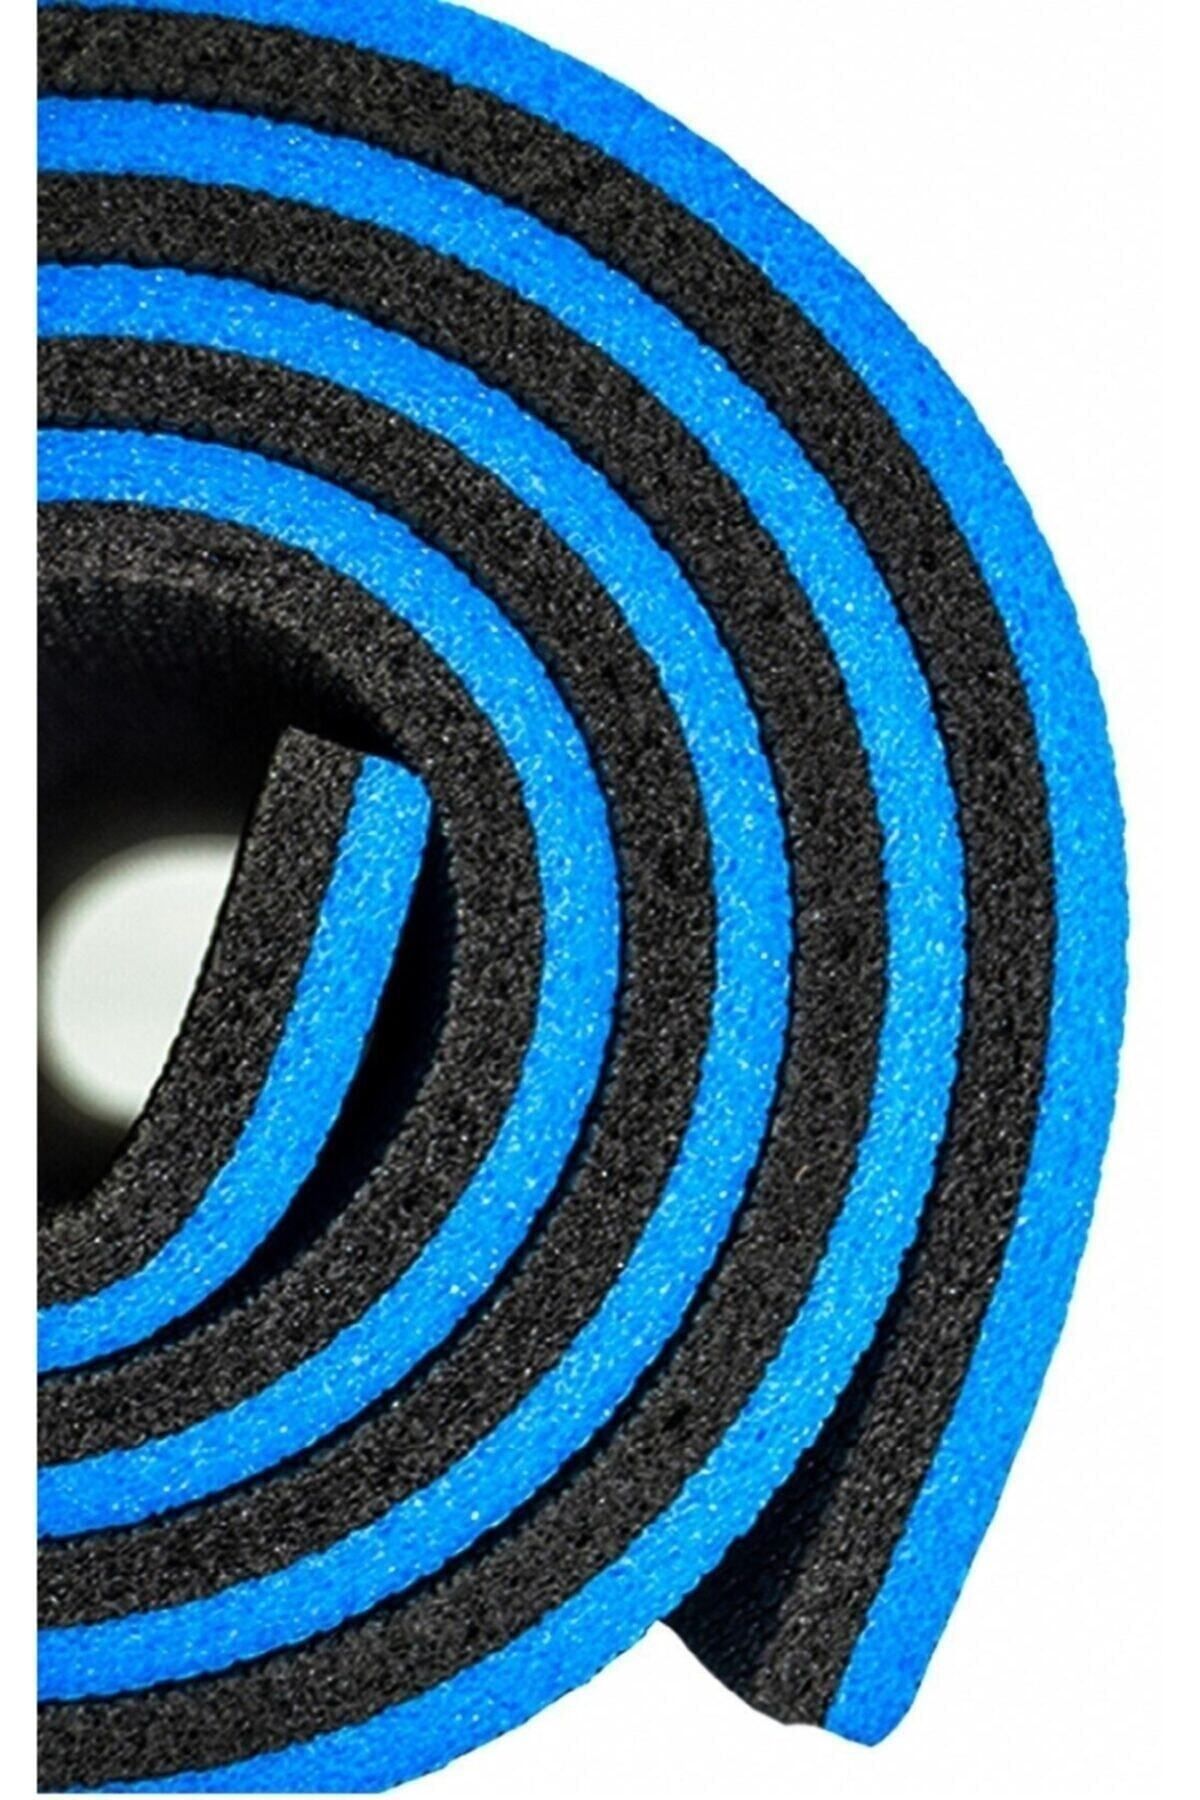 Bernardo Yıldız 16 Mm En Kalın Egzersiz Pilates Minderi Kamp Yoga Mat Çift Taraflı 180x60 Mavi-siyah